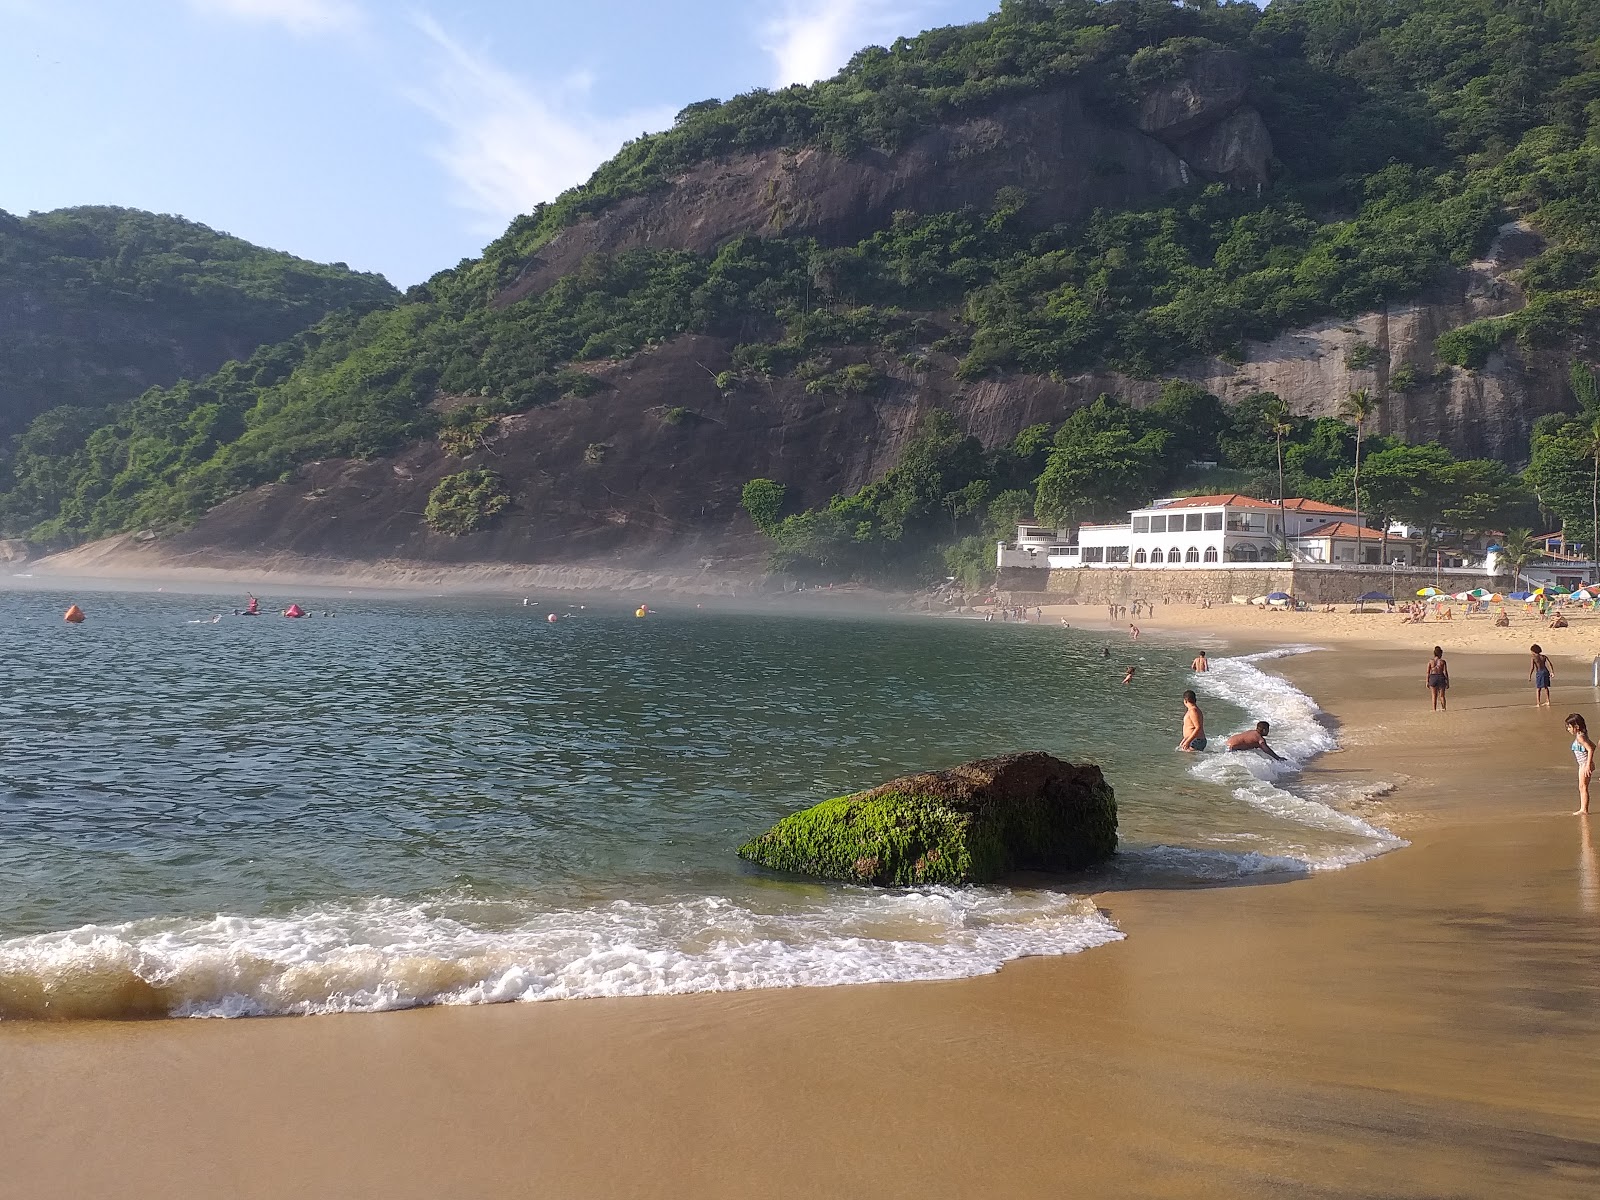 Vermelha Plajı'in fotoğrafı geniş ile birlikte